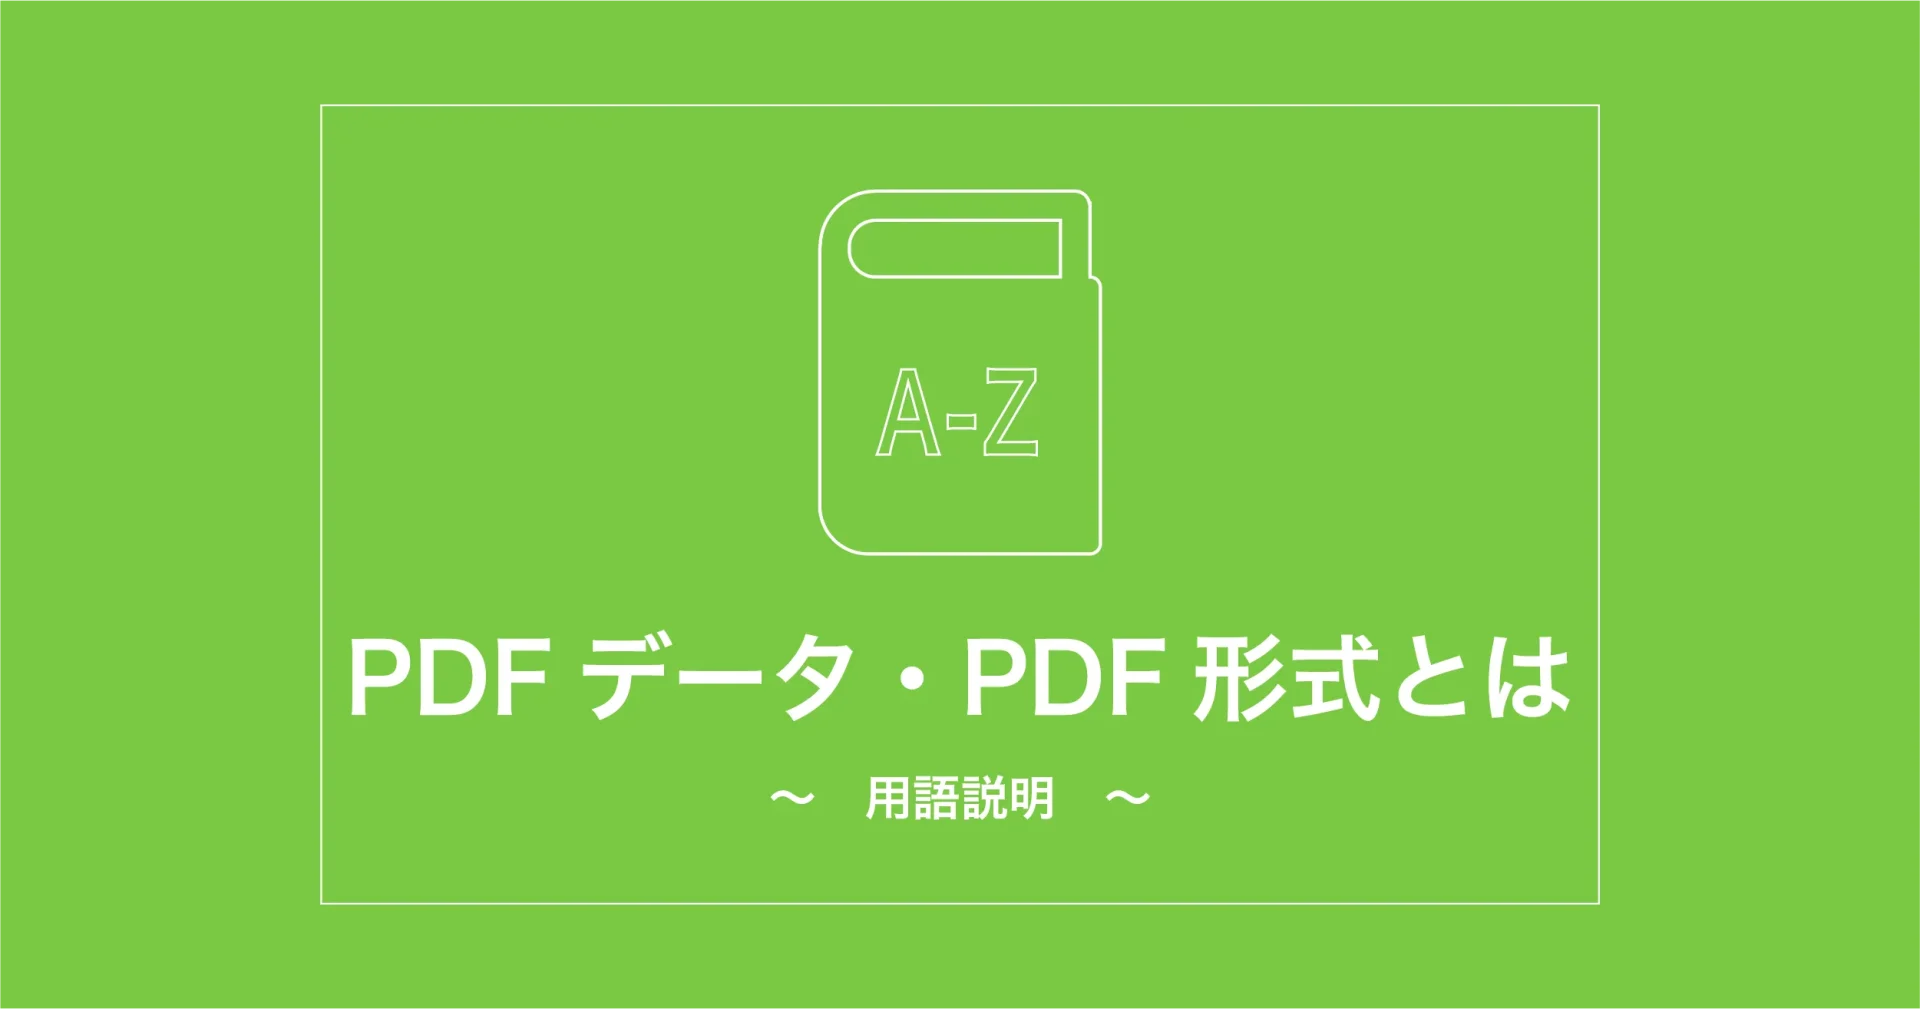 PDFデータ・PDF形式とは